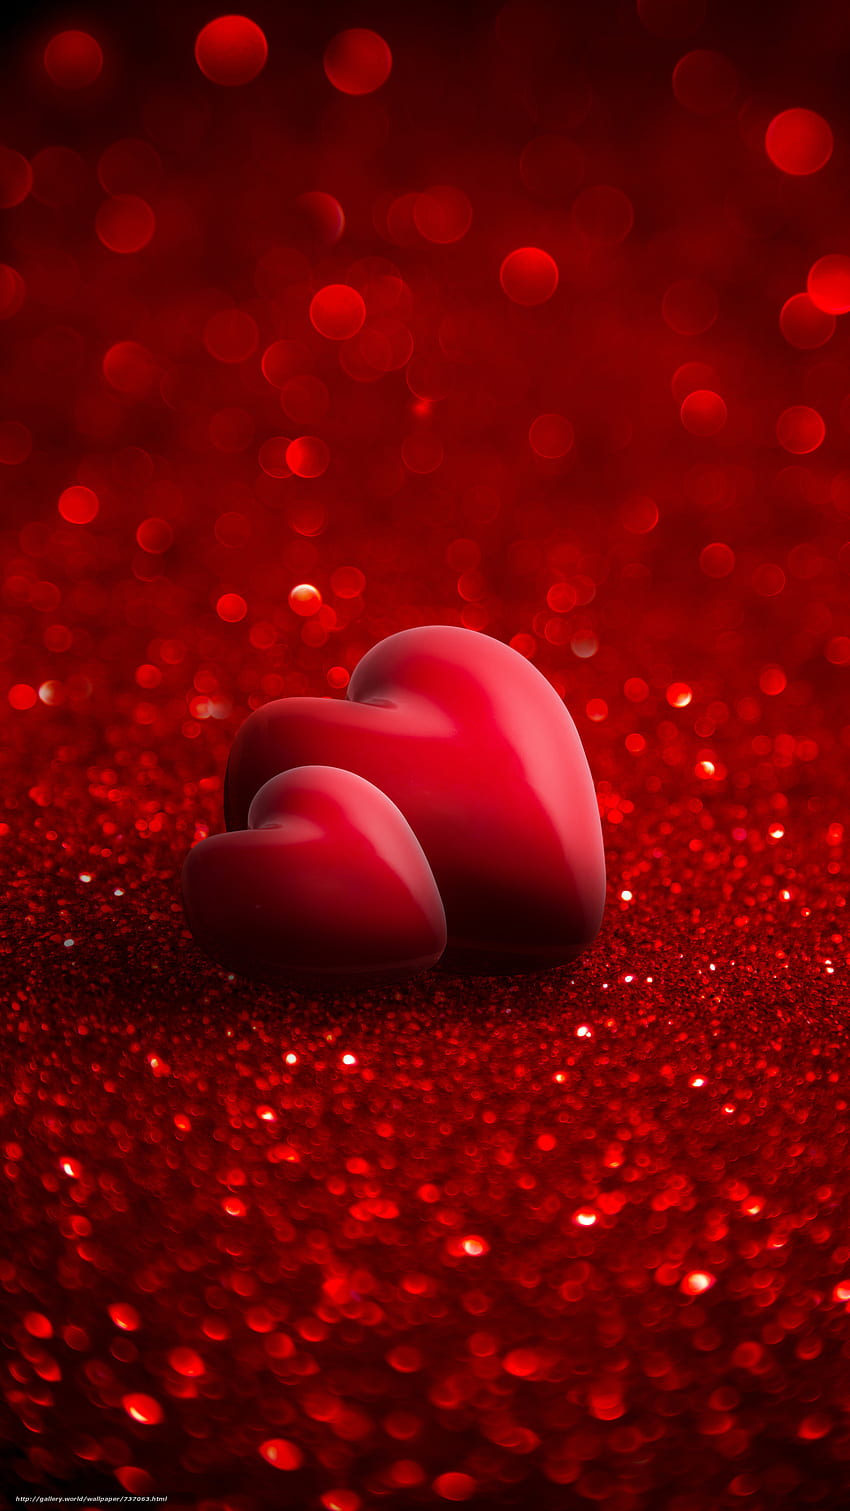 Merah Hati, Merah Hati, Cinta Hati wallpaper ponsel HD